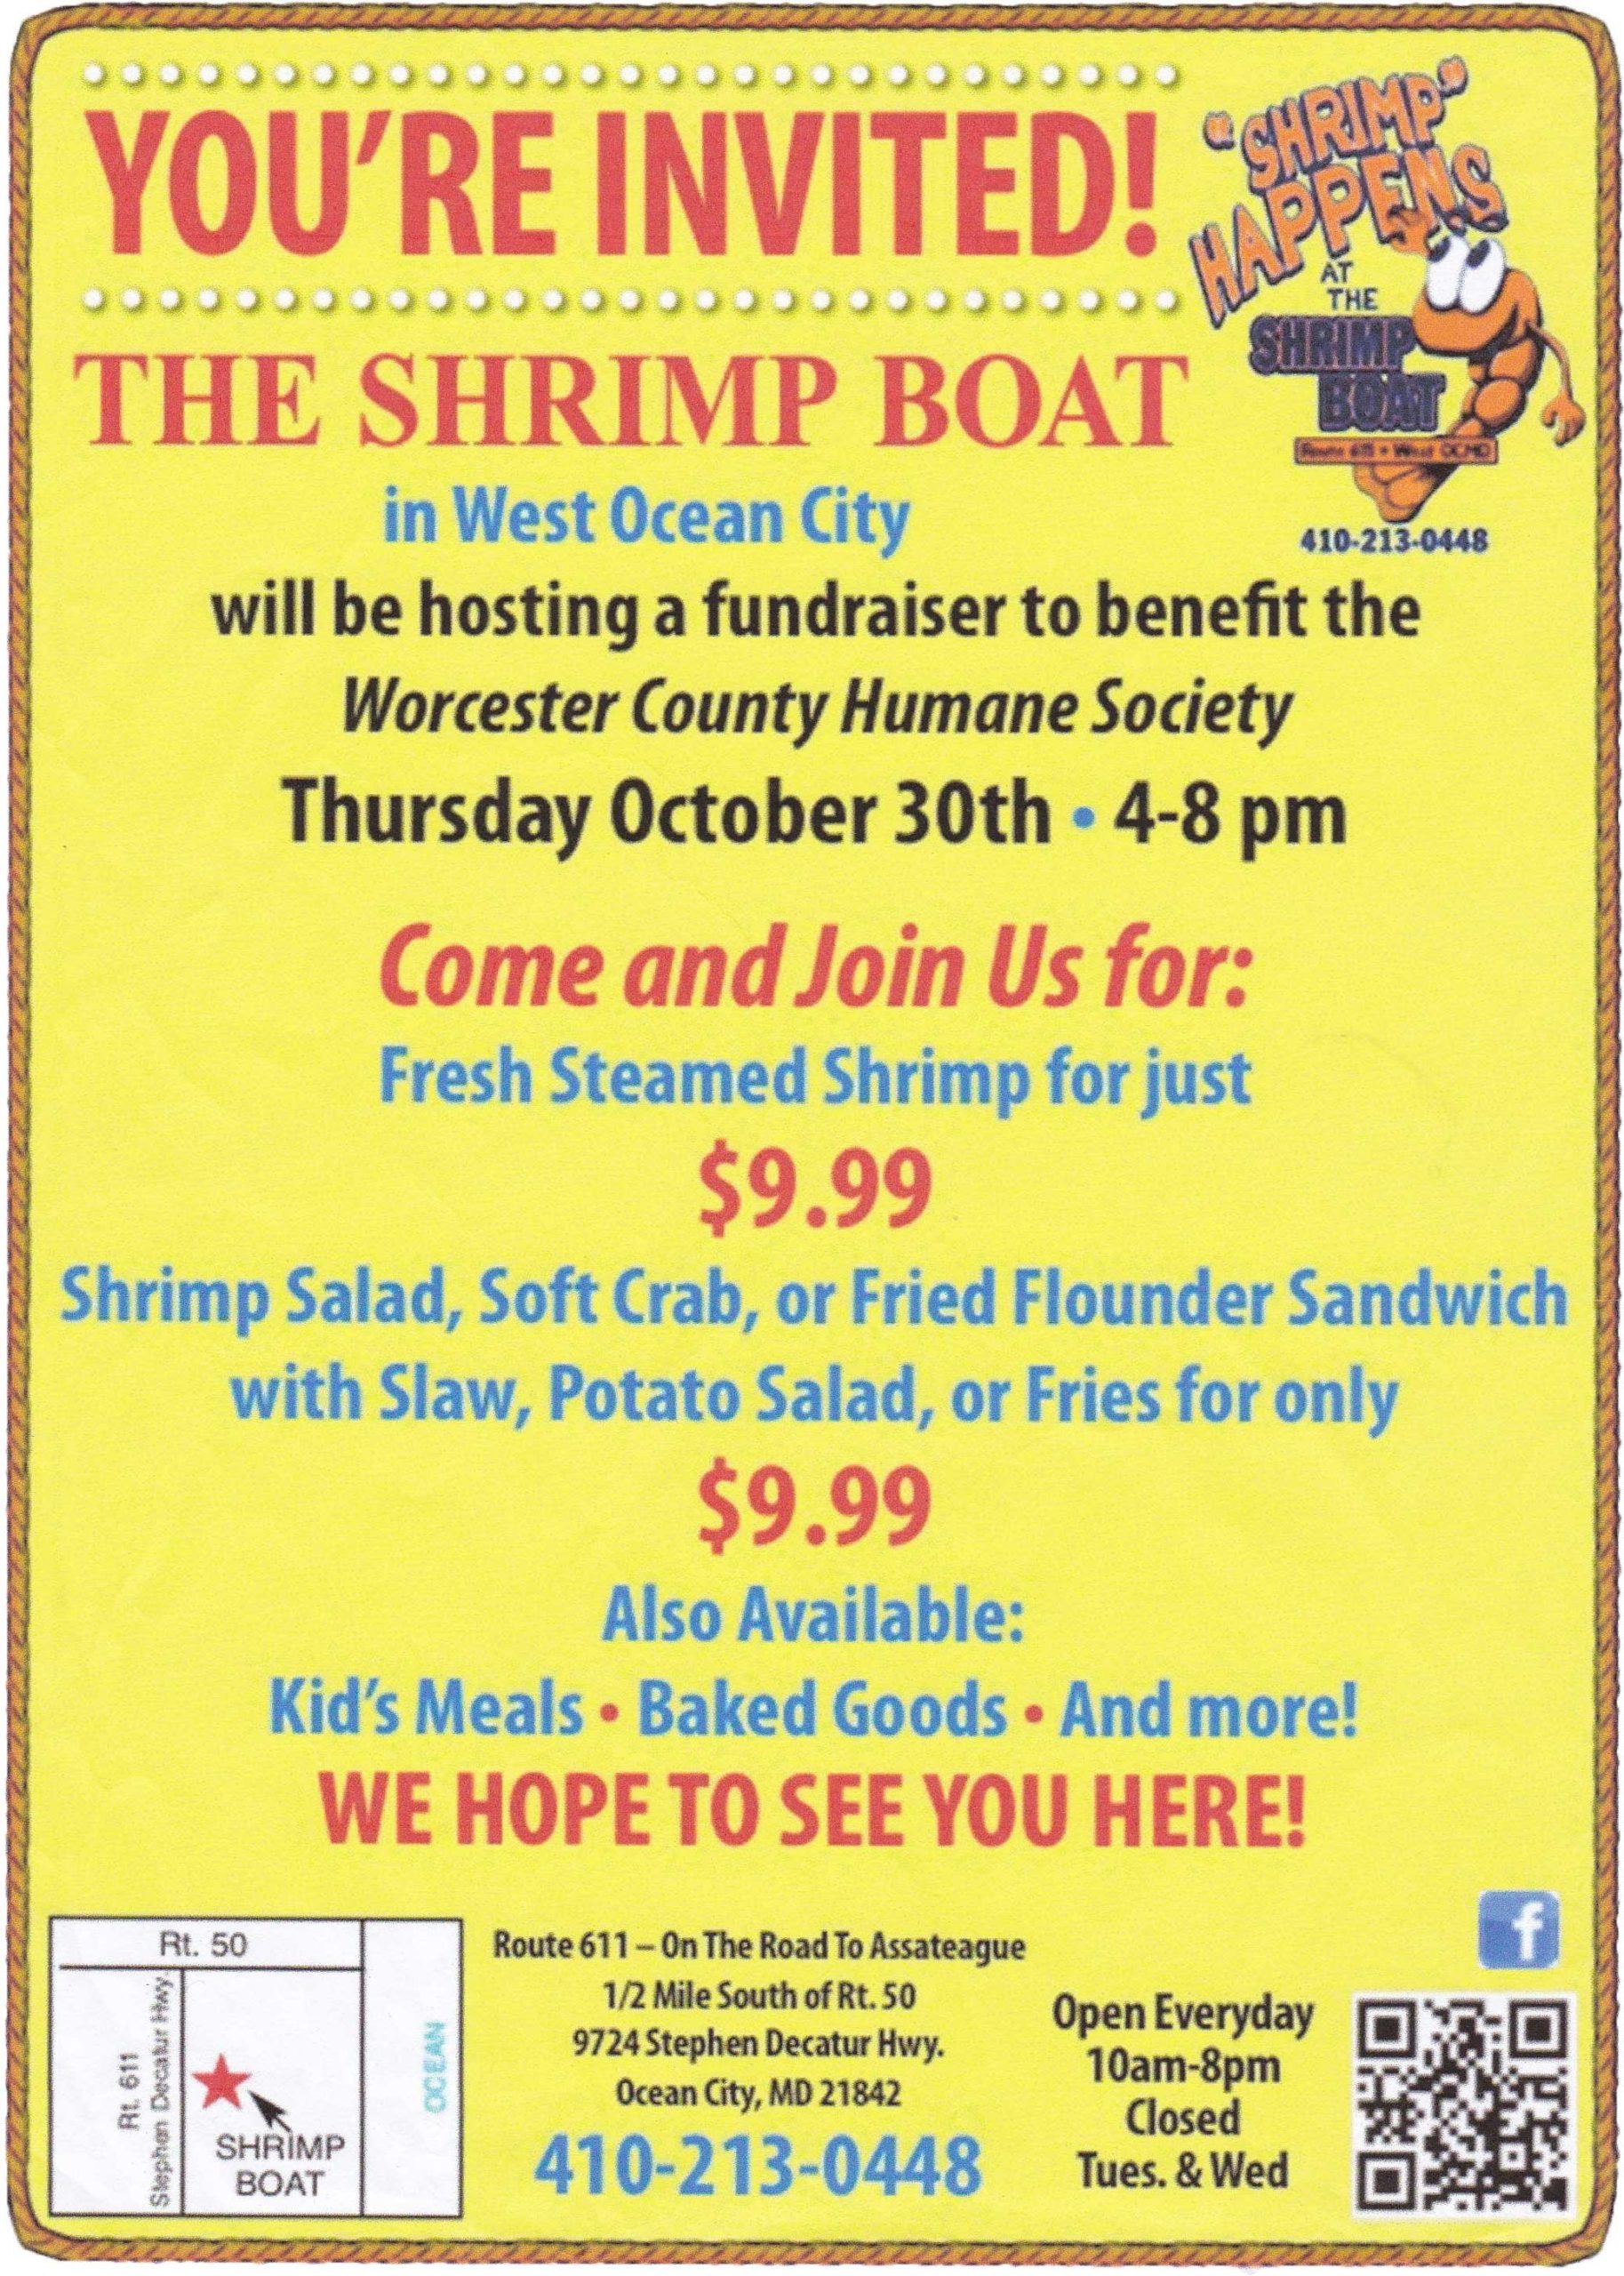 The Shrimp Boat Fundraiser